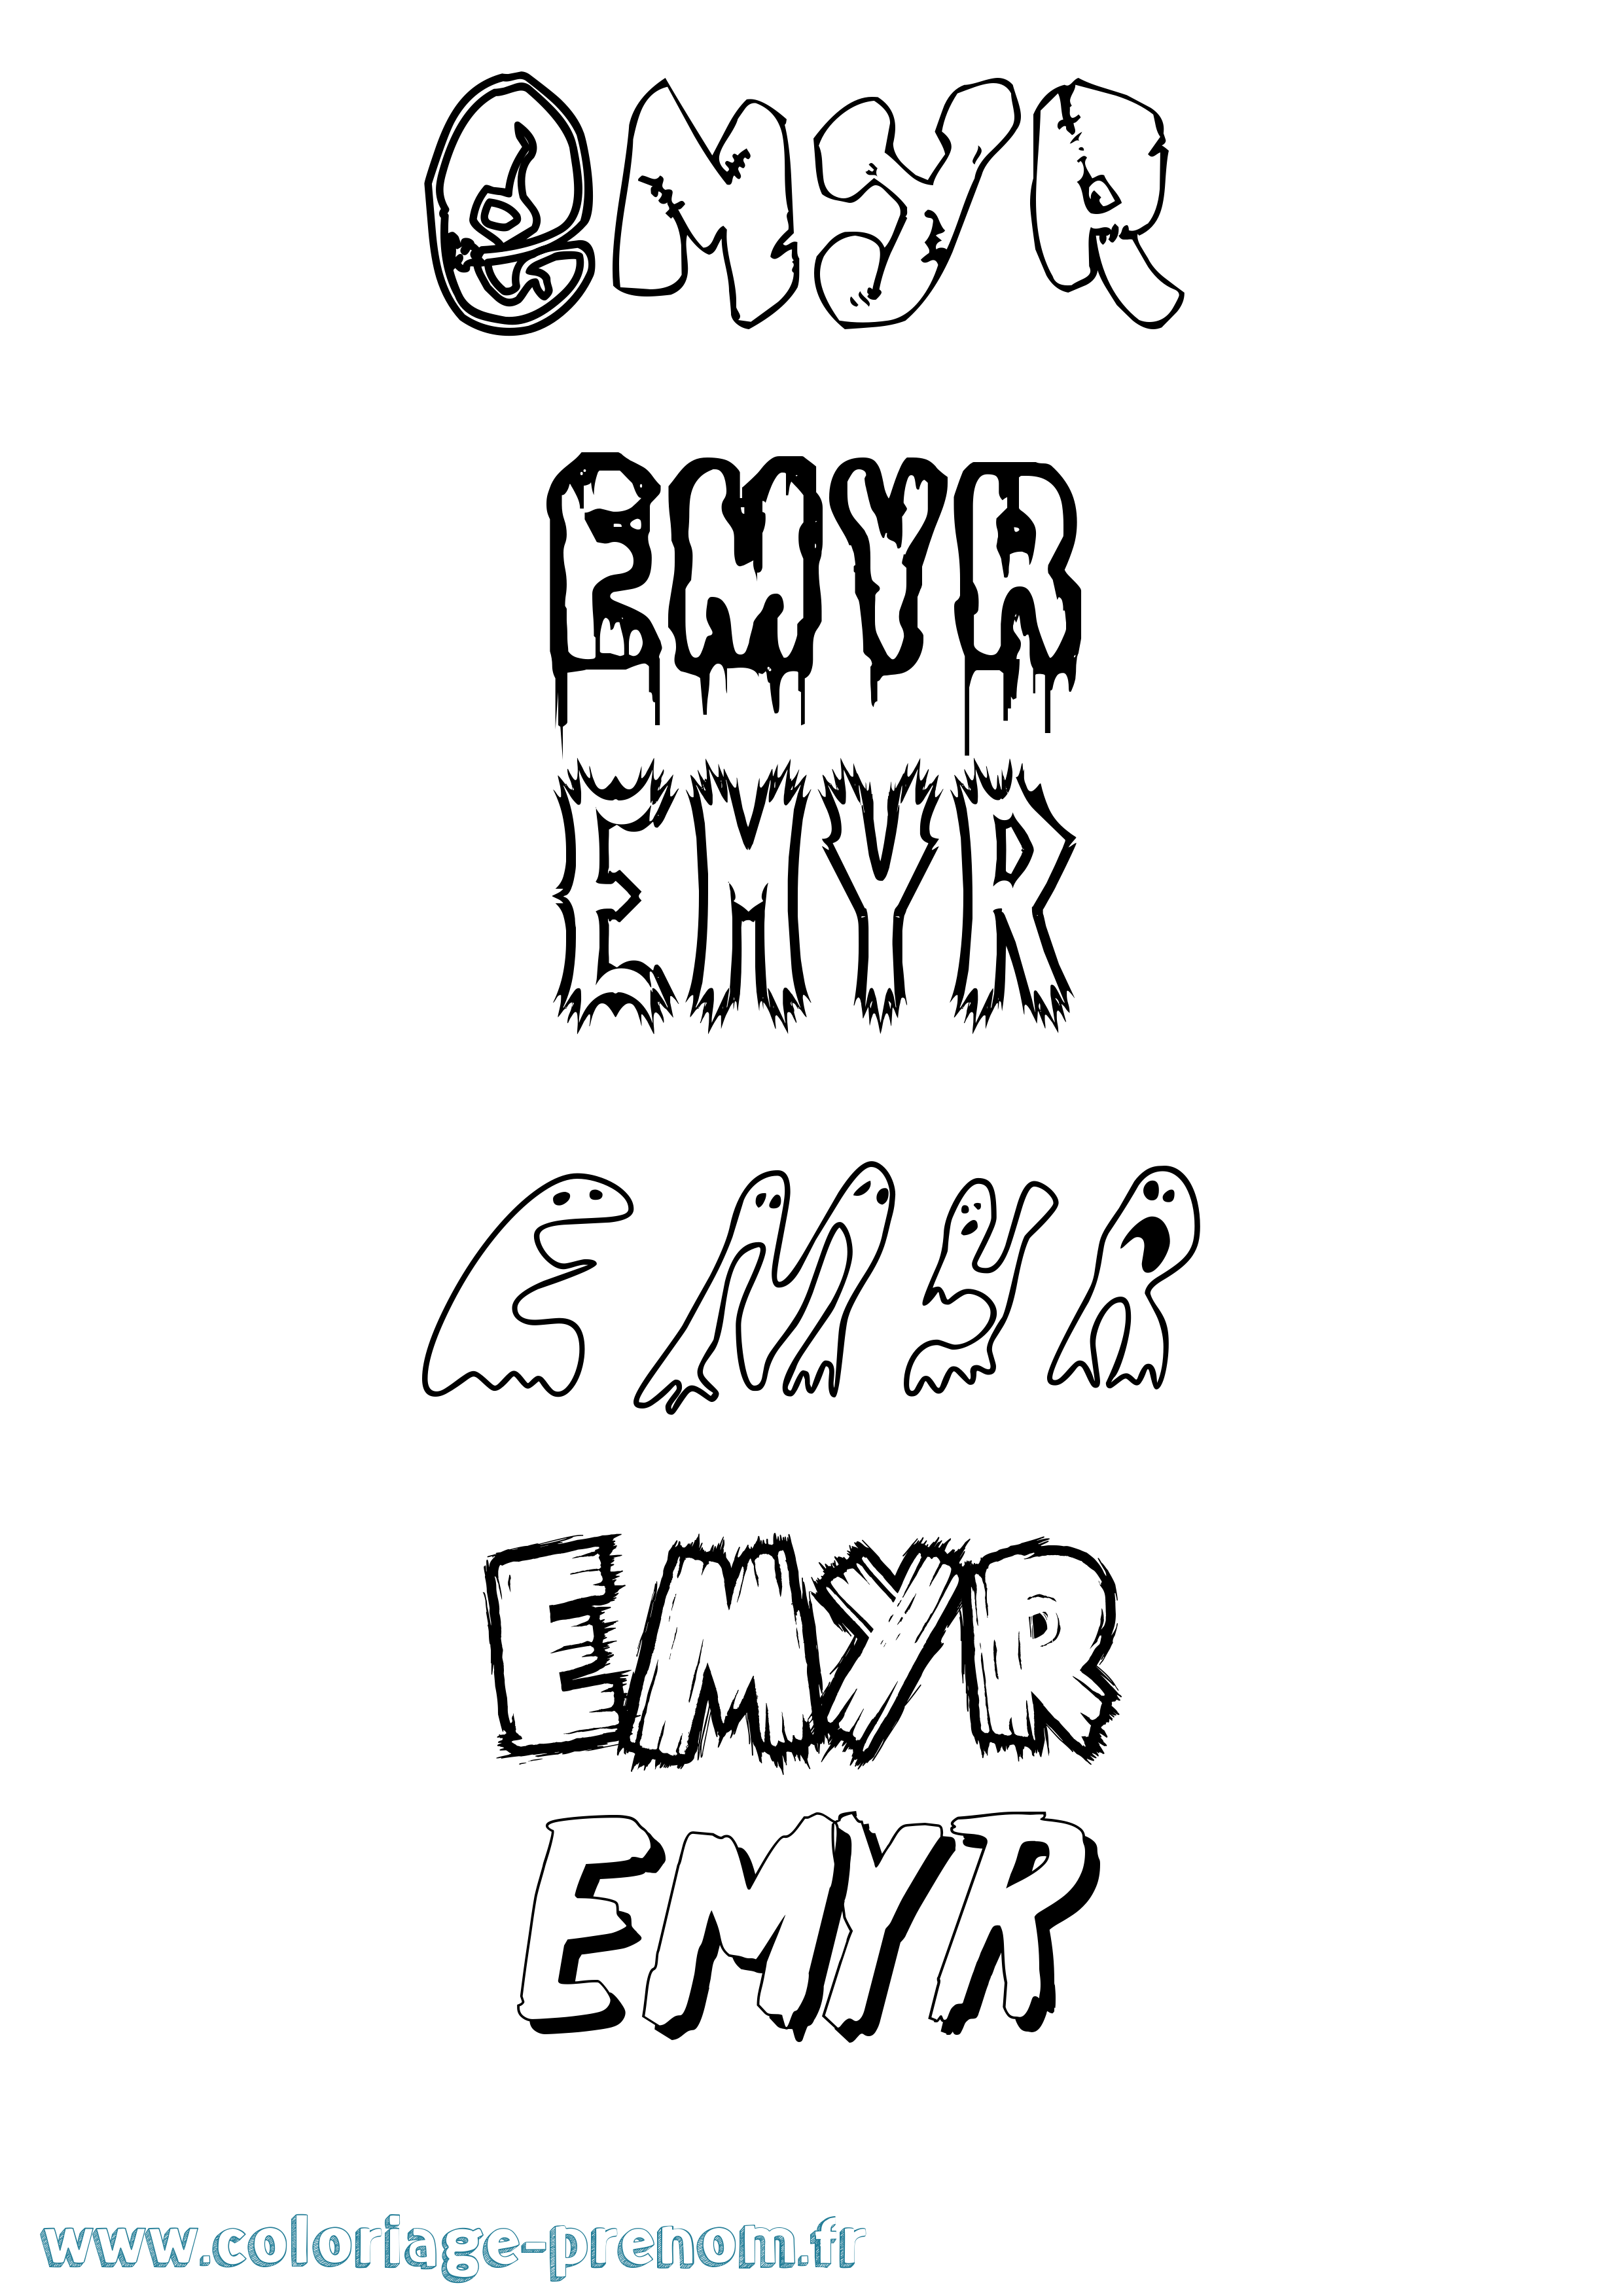 Coloriage prénom Emyr Frisson